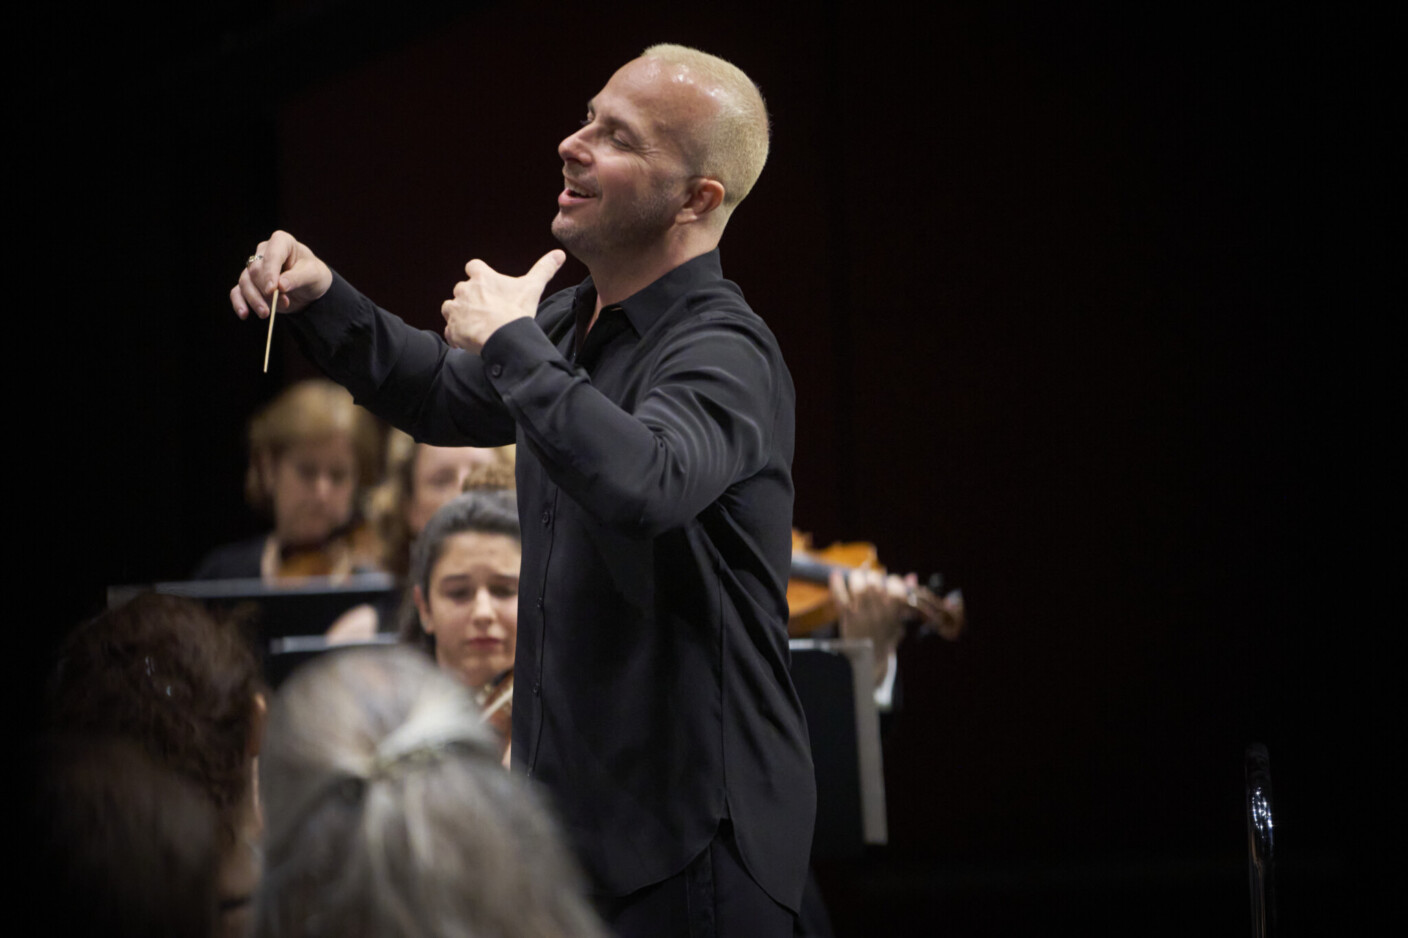 Yannick Nézet-Séguin ist in den Baden-Baden als Dirigent und Pianist zu erleben